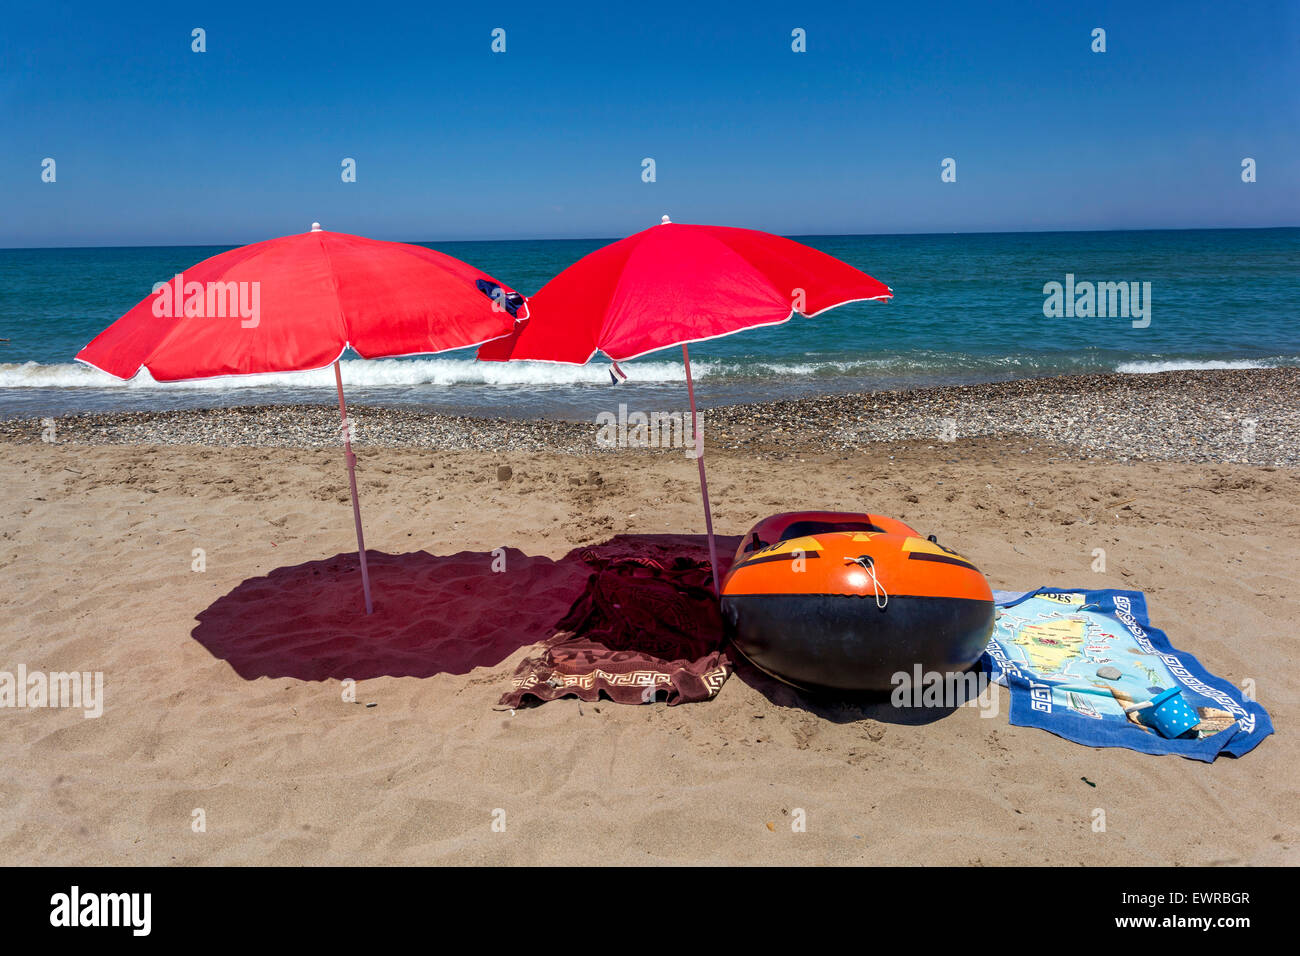 Zwei rote Sonnenschirme am Strand von Rethymno, Kreta, Griechenland Sonnenschirme werfen einen Schatten, Stillleben am Strand Aufblasbares Boot und Handtücher, niemand Stockfoto